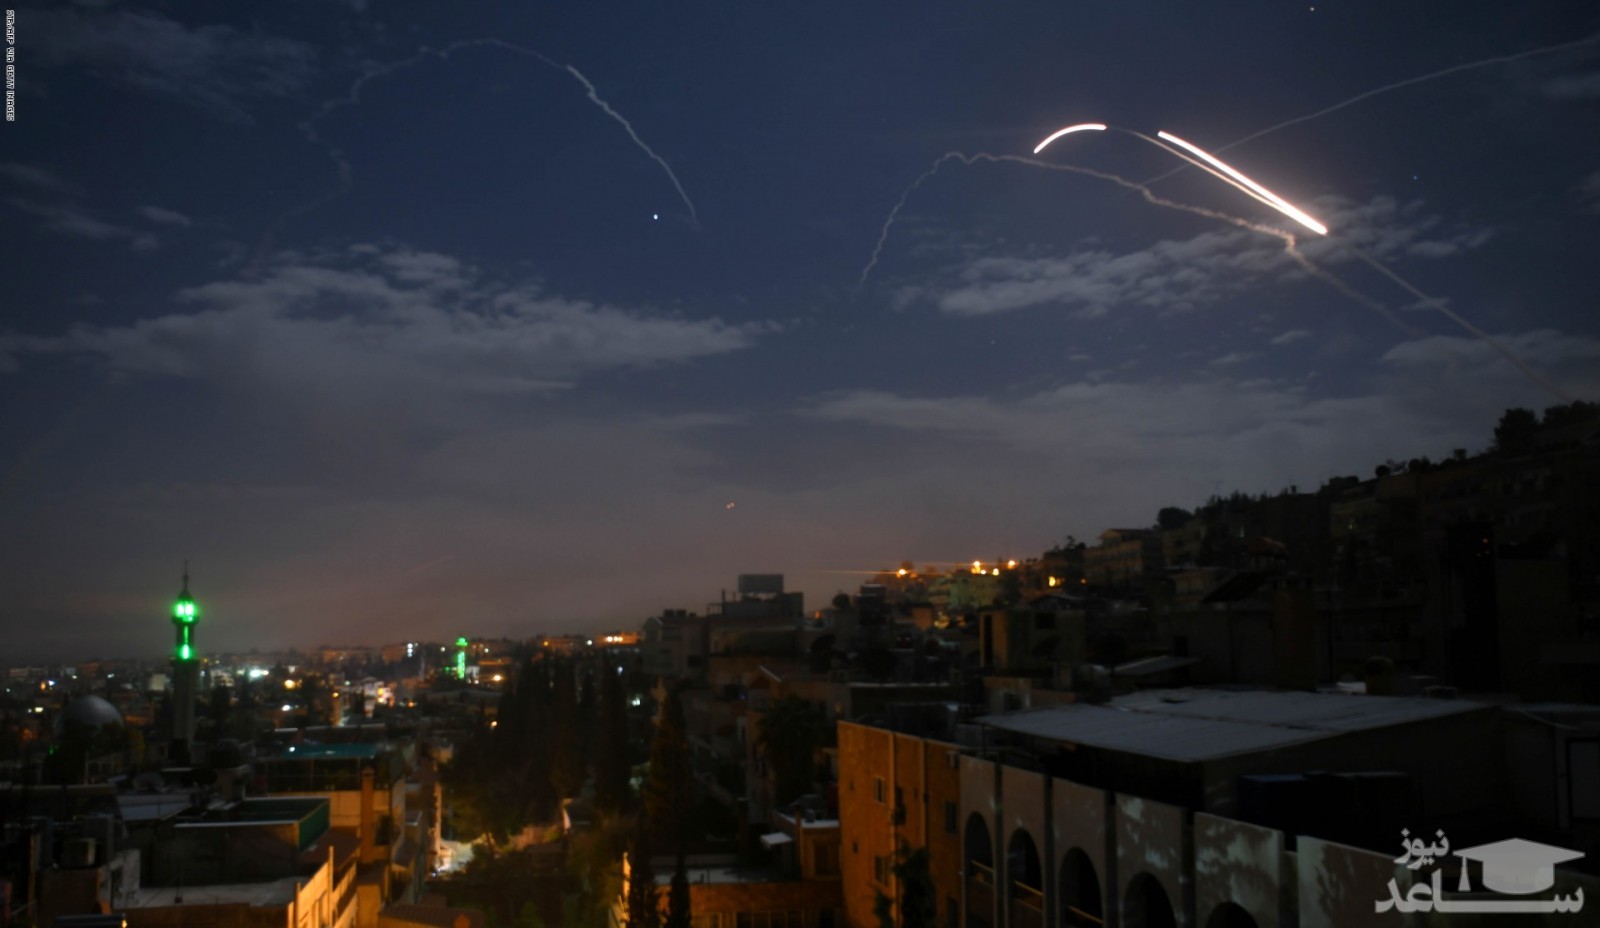 دفع حمله هوایی اسرائیل به پایتخت یک کشور عربی